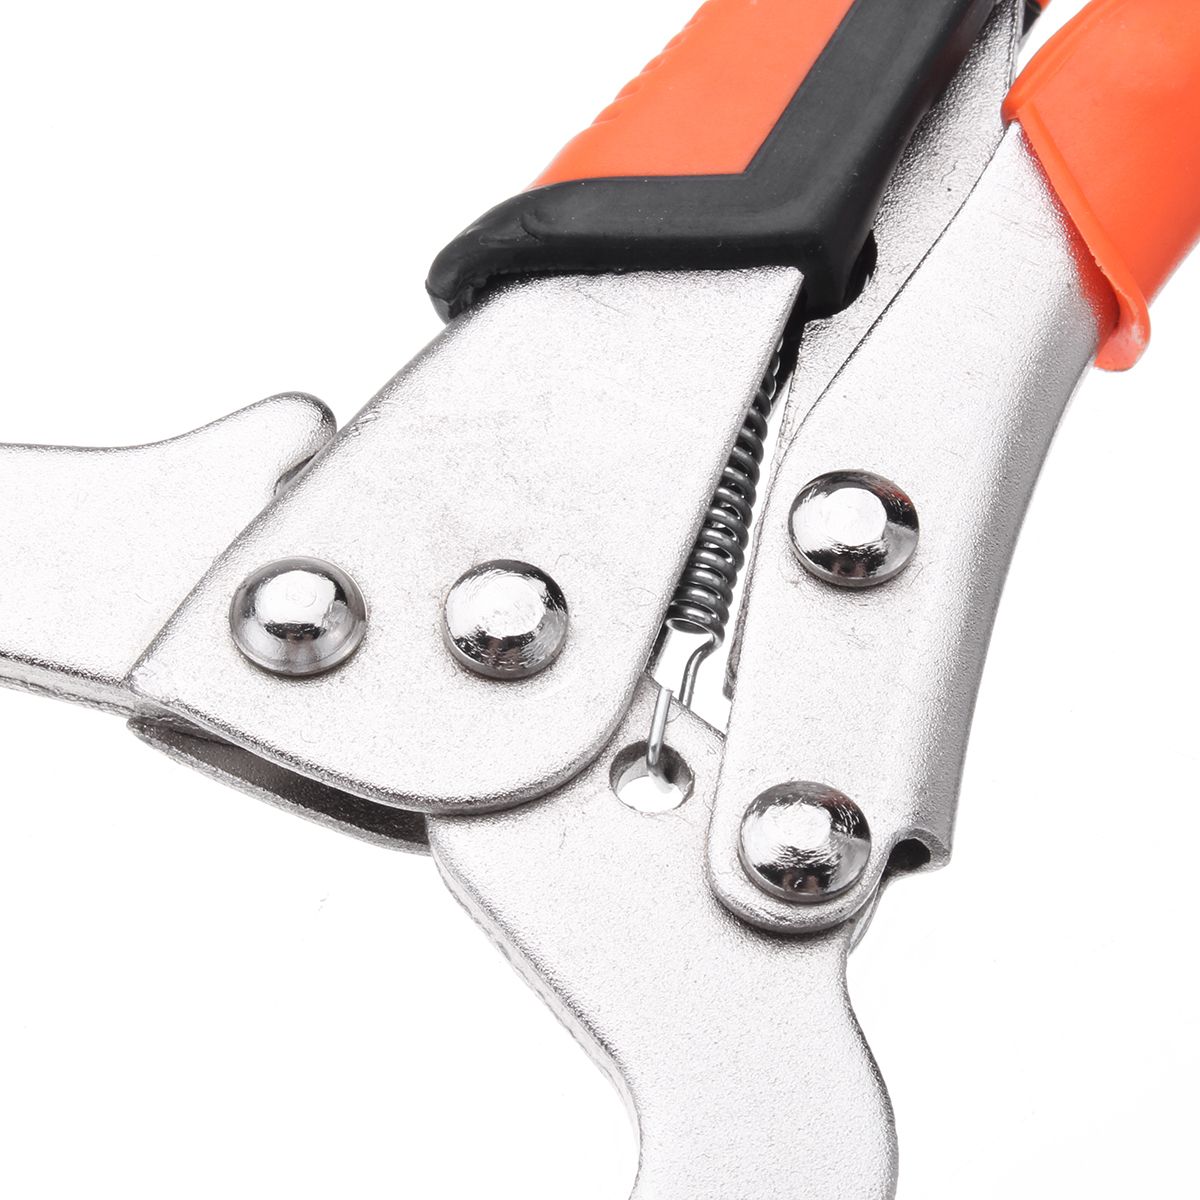 69111418inch-Alloy-Steel-C-Bracket-Vise-Grip-Welding-Quick-Pliers-Hand-Tool-1260840